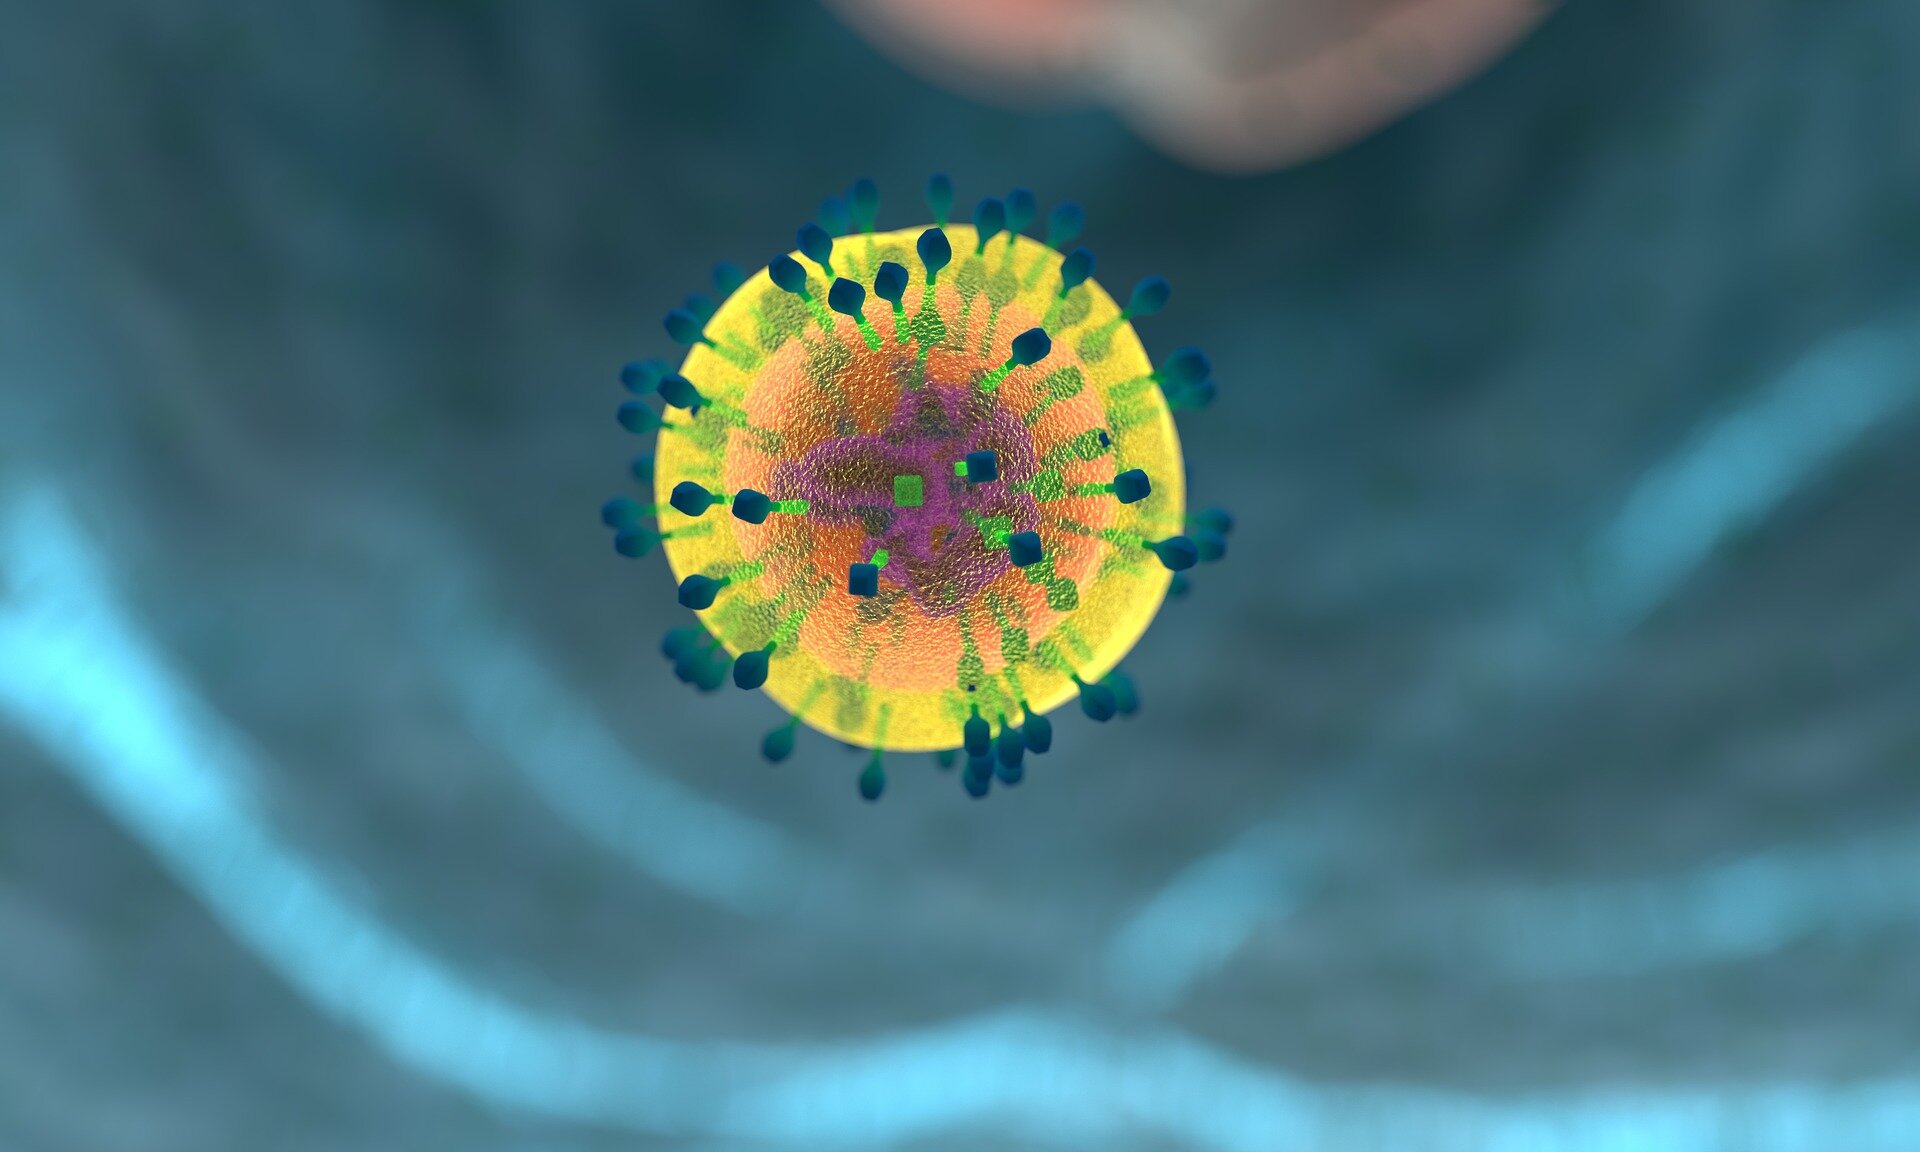 Un estudio de investigación encontró una forma de reactivar poderosas células inmunes para tratar el cáncer